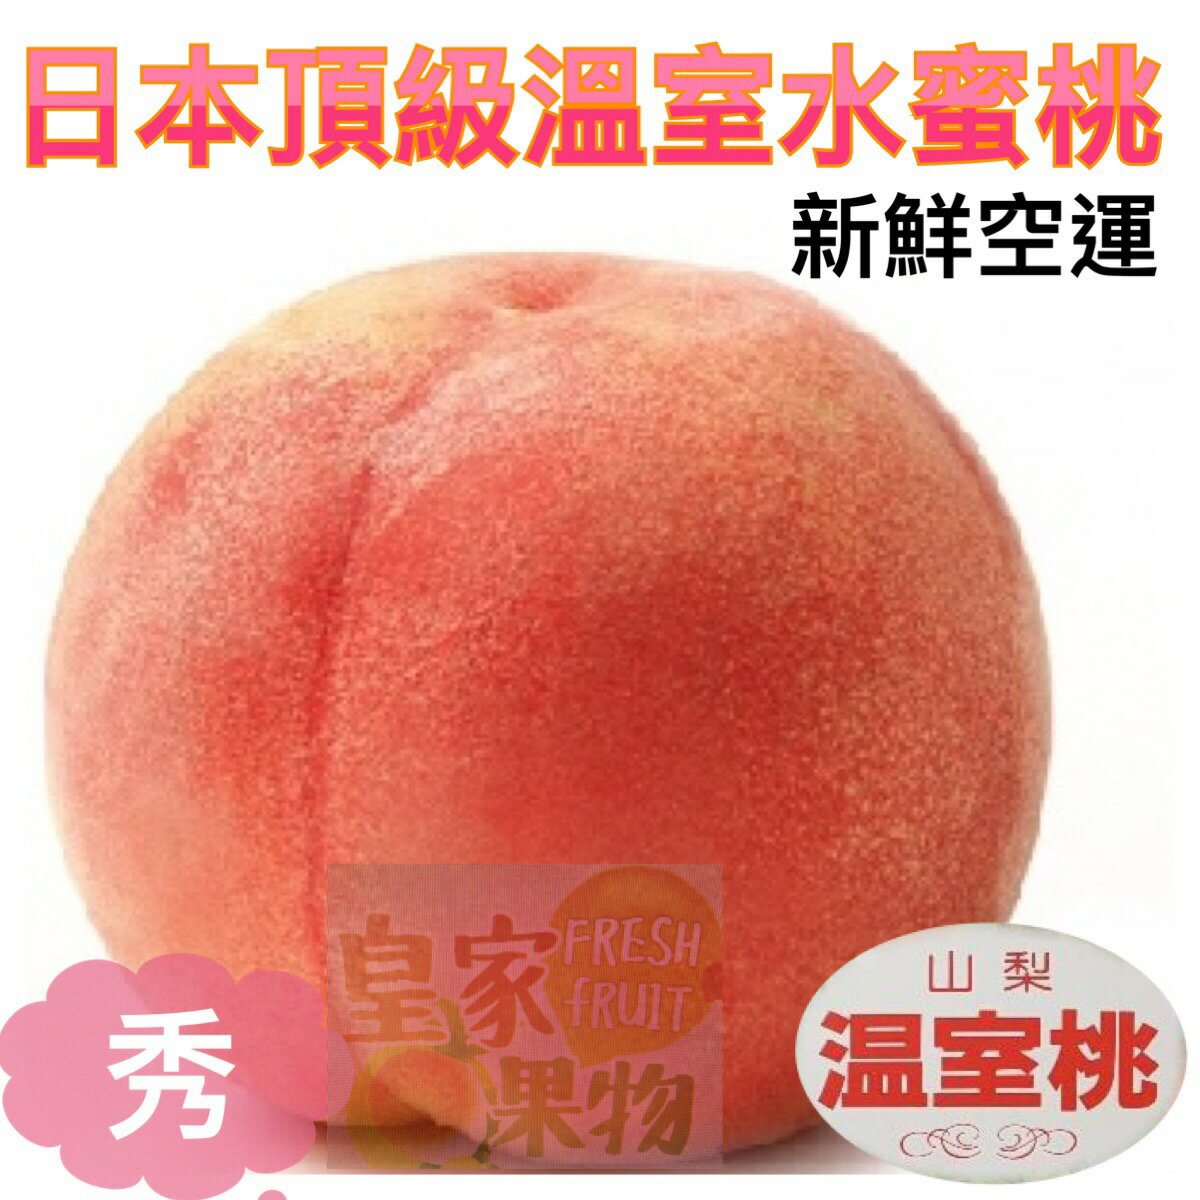 (新鮮上市)日本空運頂級溫室水蜜桃〈4~6入〉多箱優惠【皇家果物】低溫免運